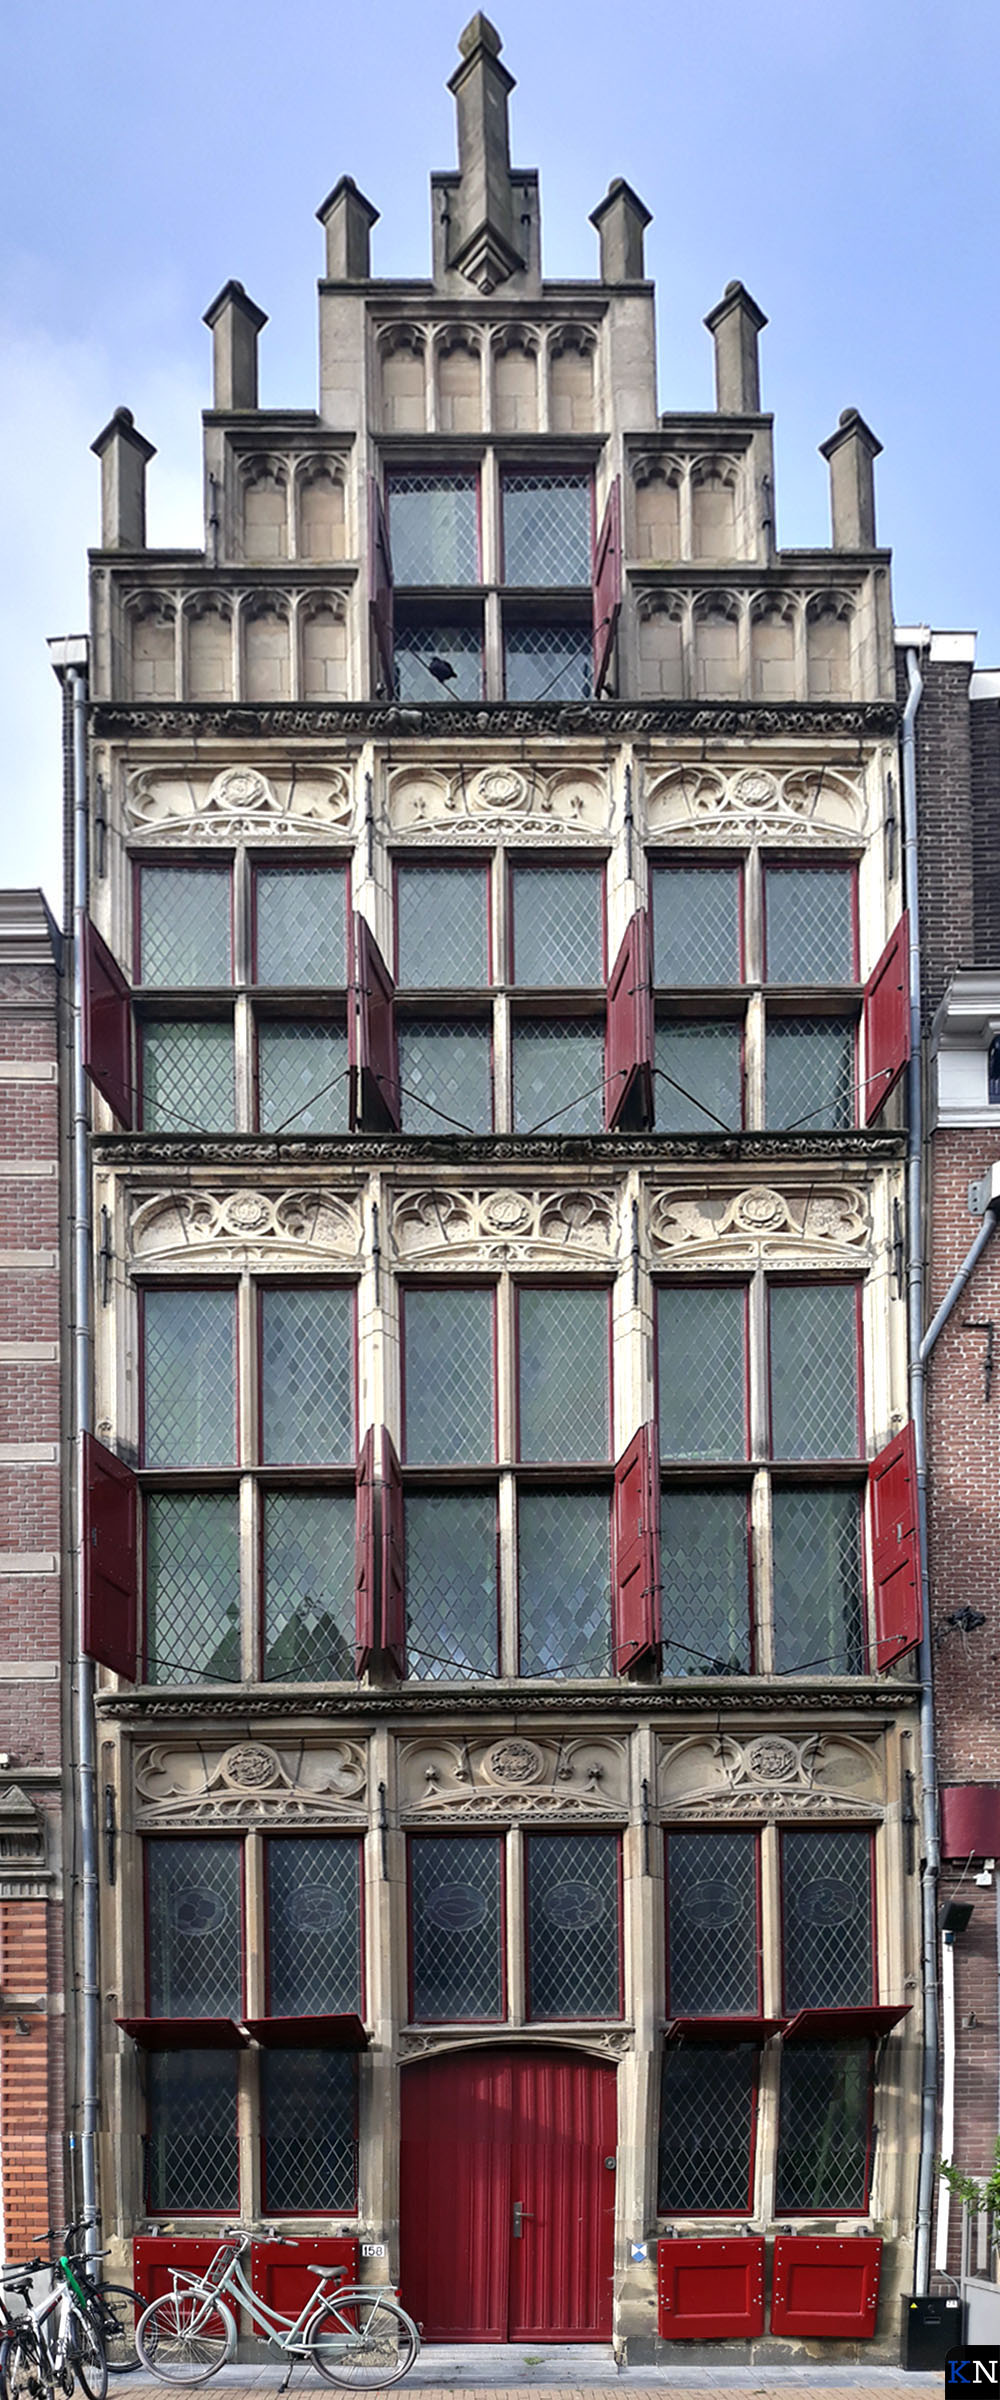 Het Gotisch Huis aan de Oudestraat in de binnenstad van Kampen.